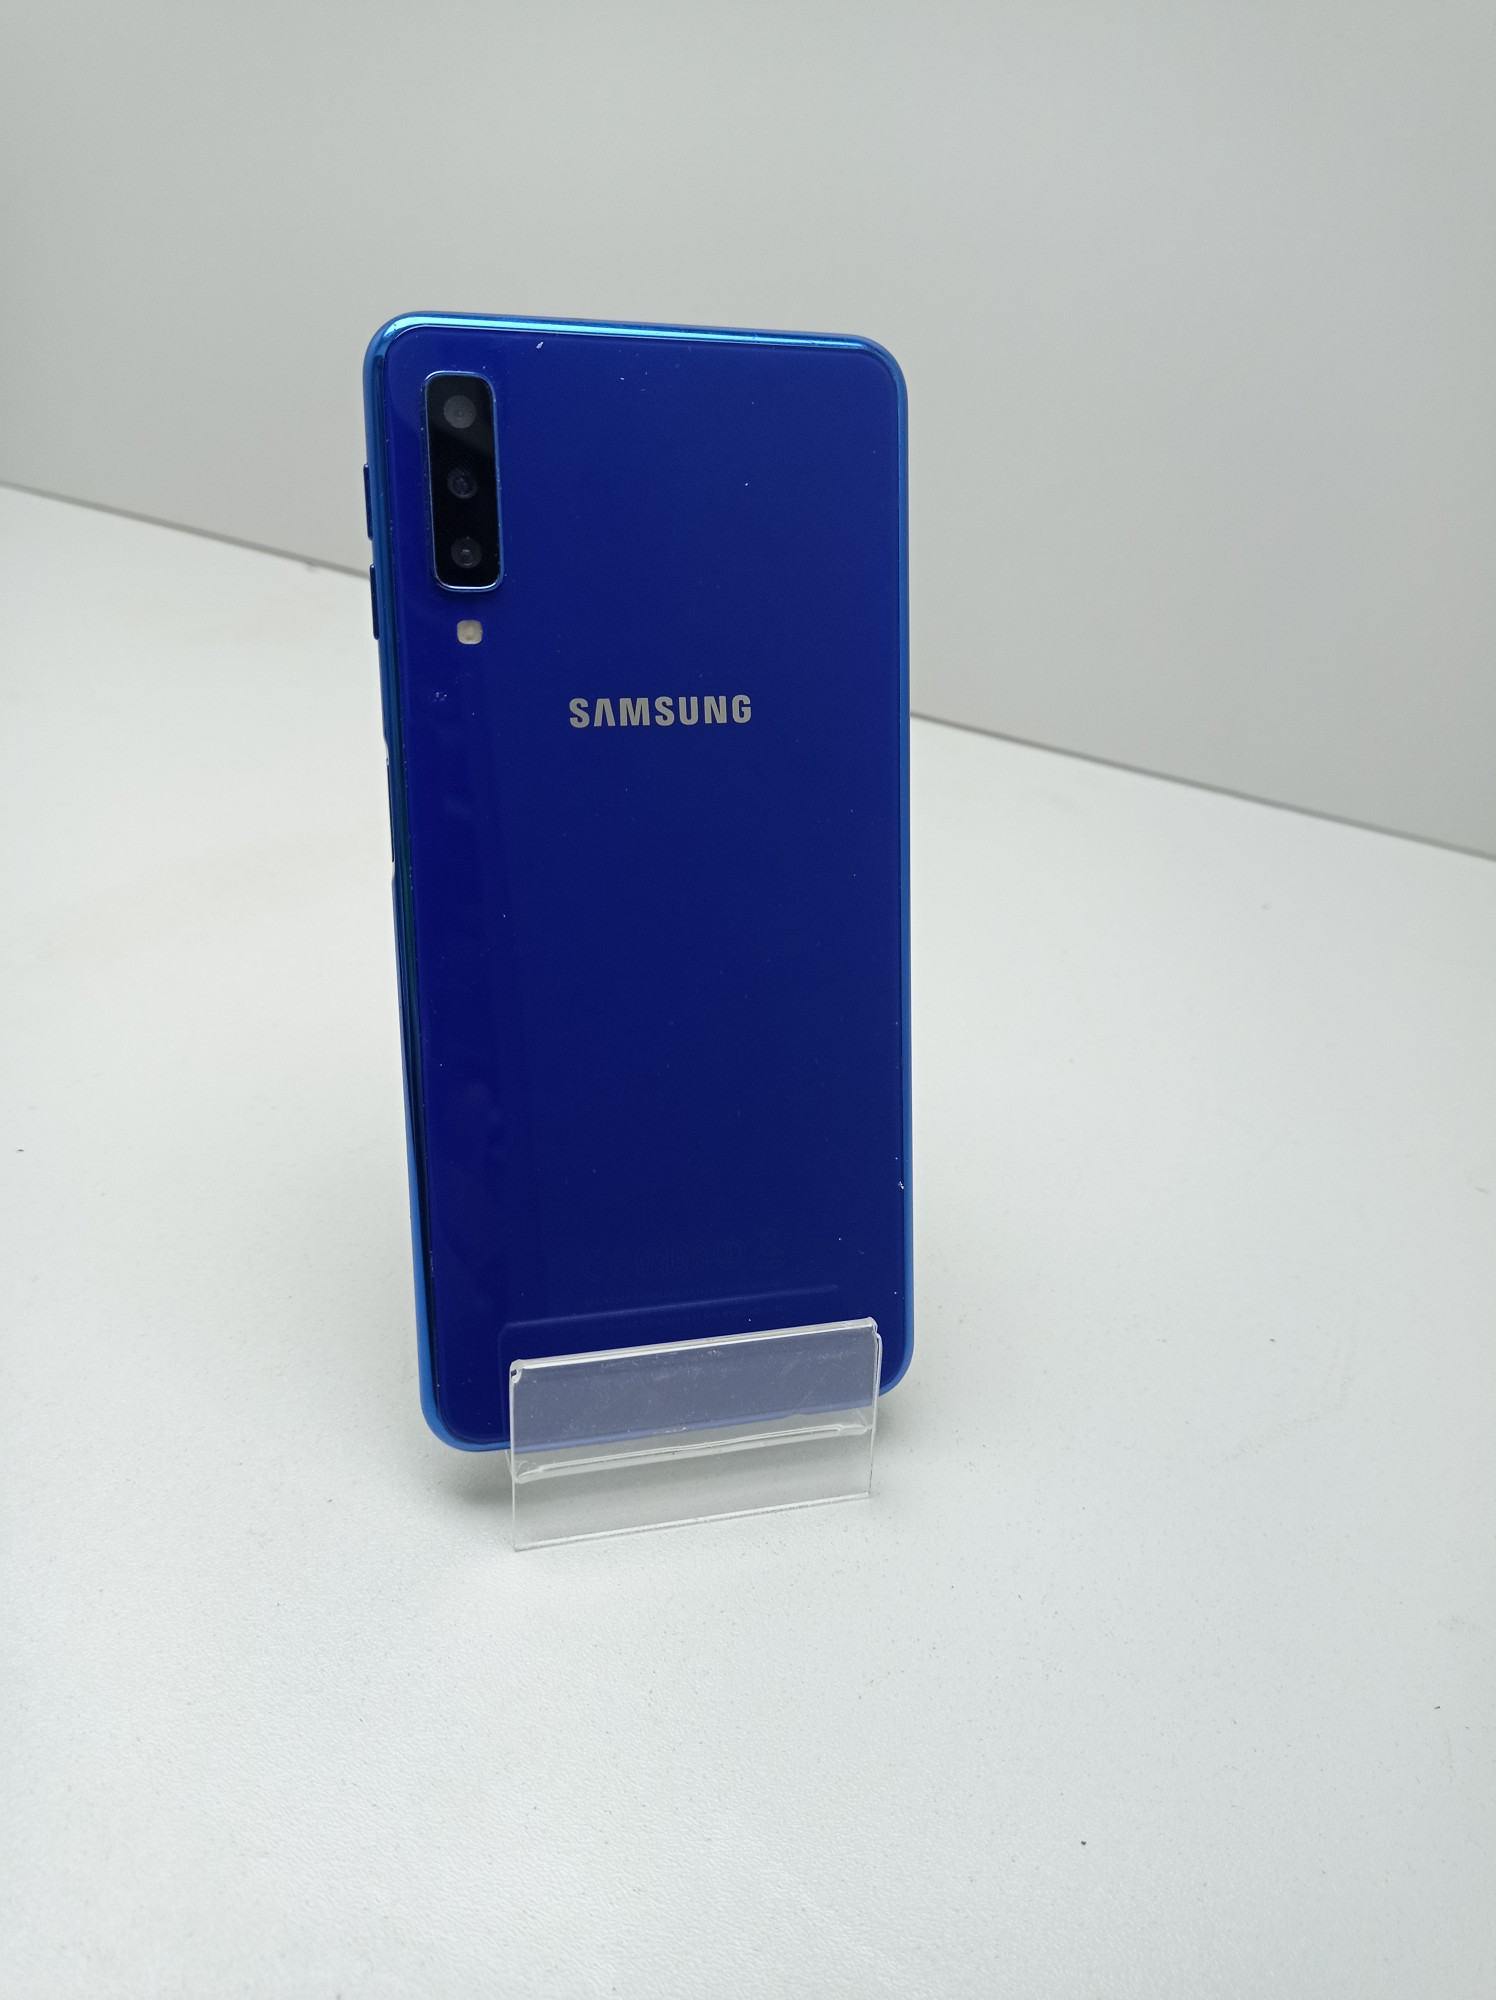 Samsung Galaxy A7 (SM-A750F) 2018 4/64GB 6